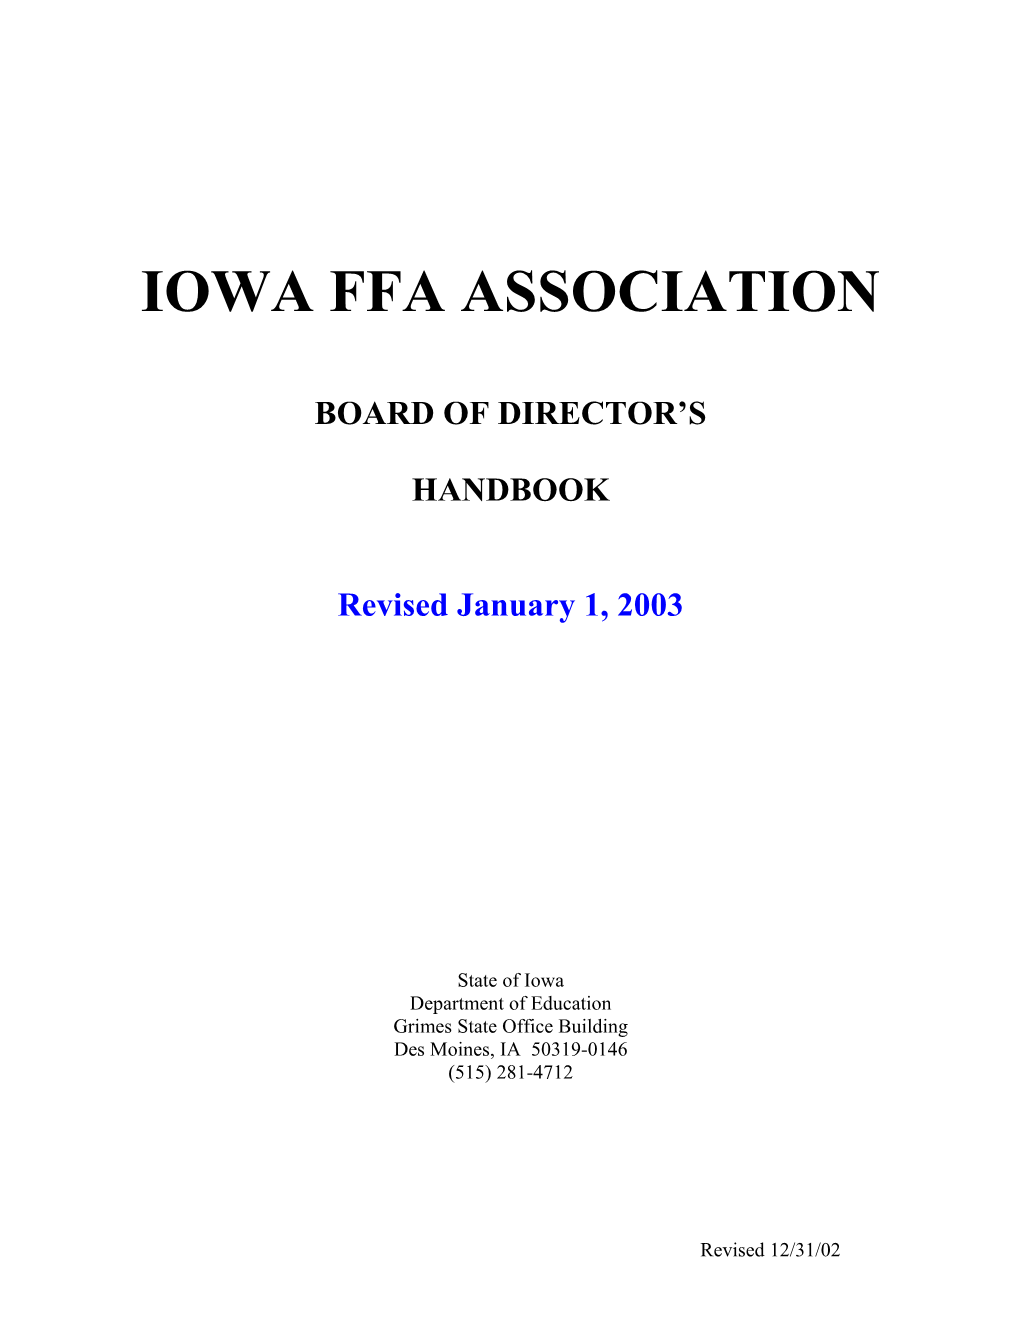 Iowa Ffa Association